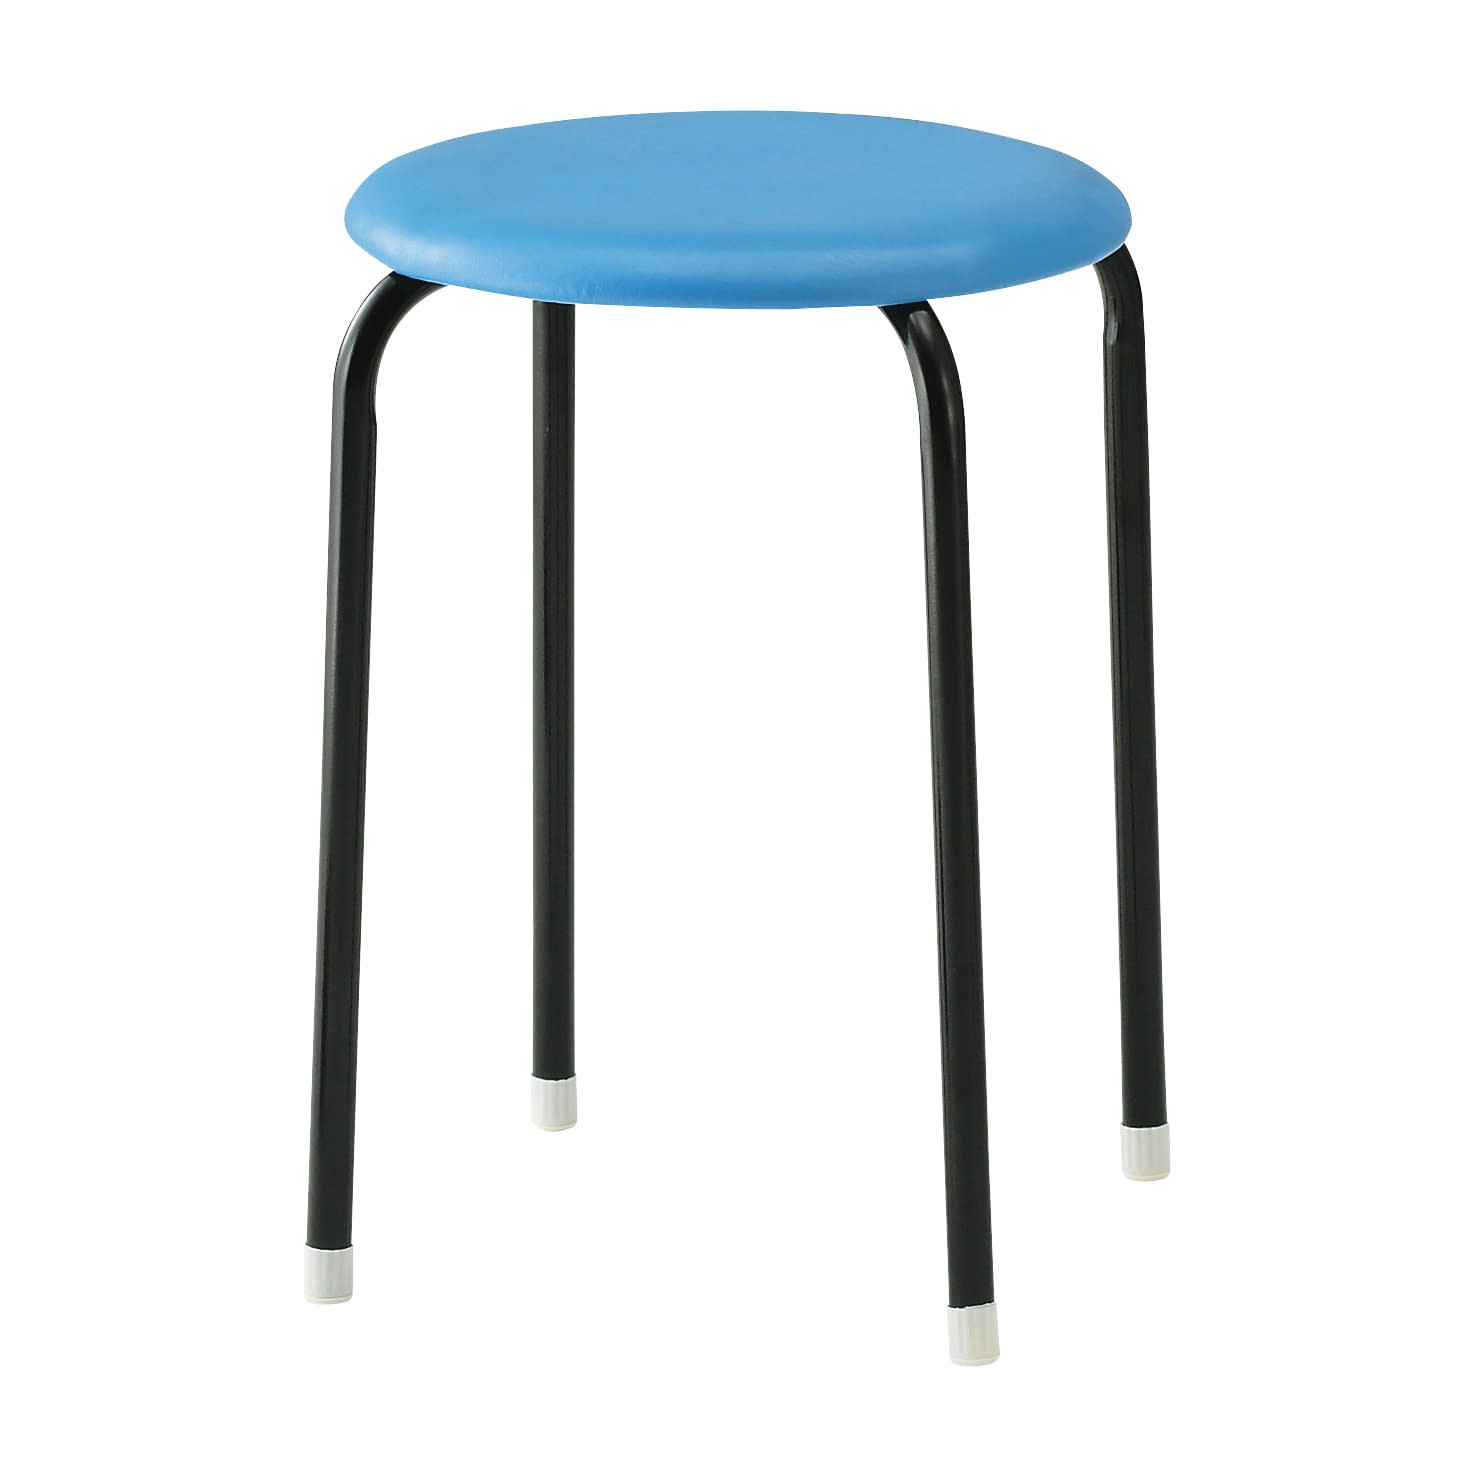 丸椅子 C-19 ブルー   25-3025-02ブルー【ノーリツイス】(C-19)(25-3025-02)